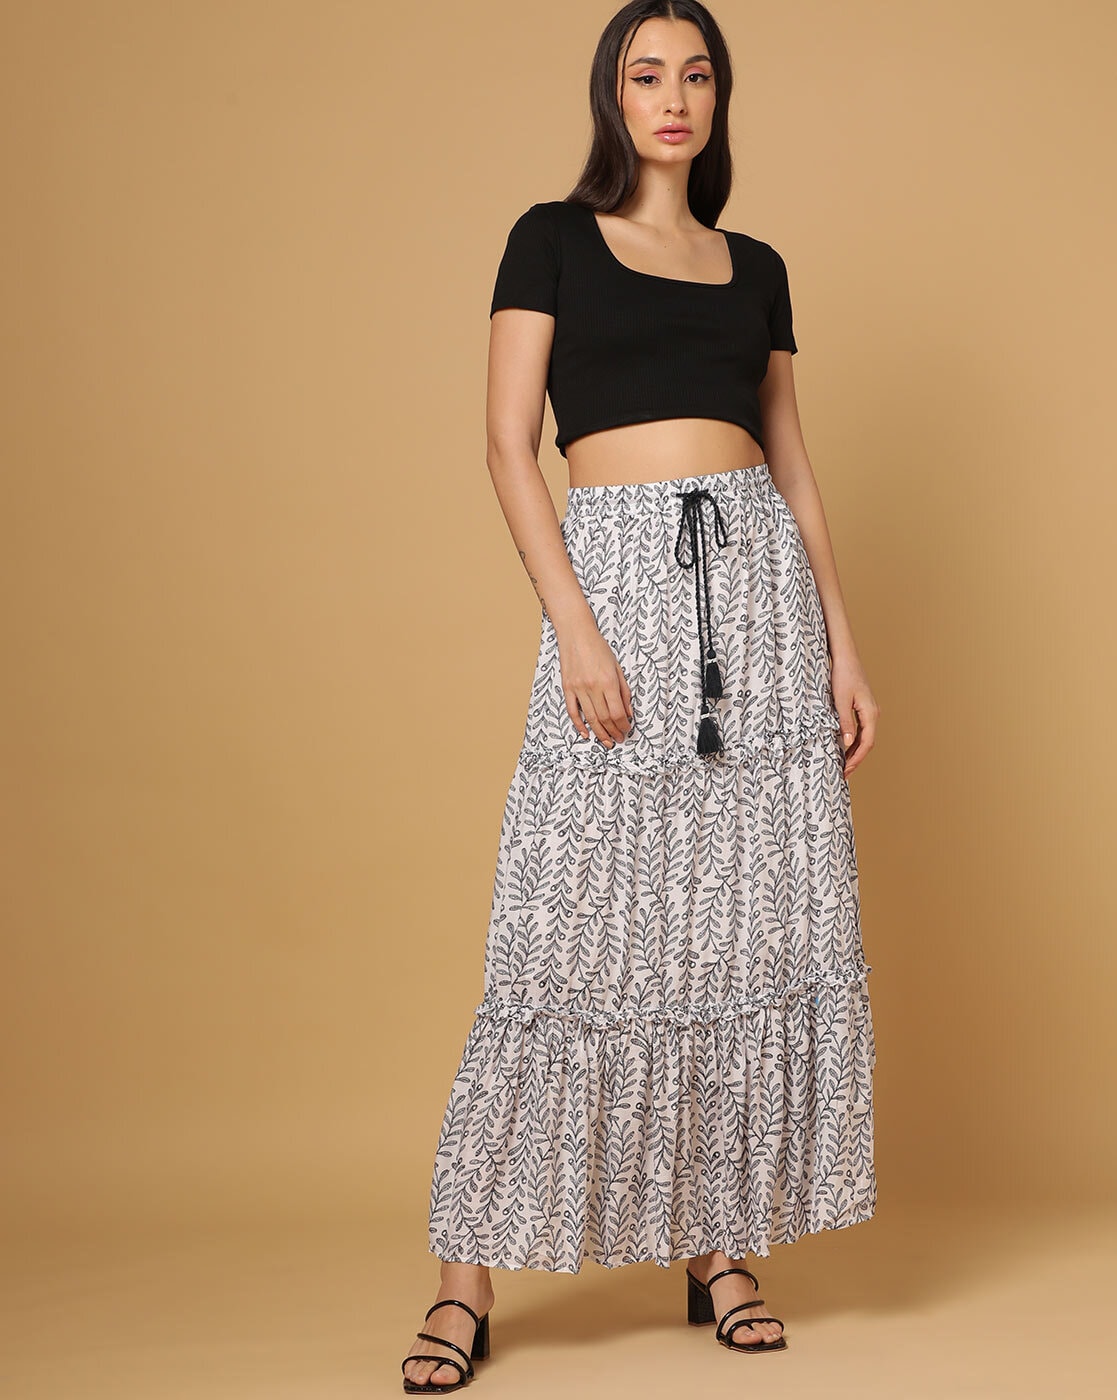 Denim skirt for women Pepe Jeans Debra - Skirts - Women's Clothing